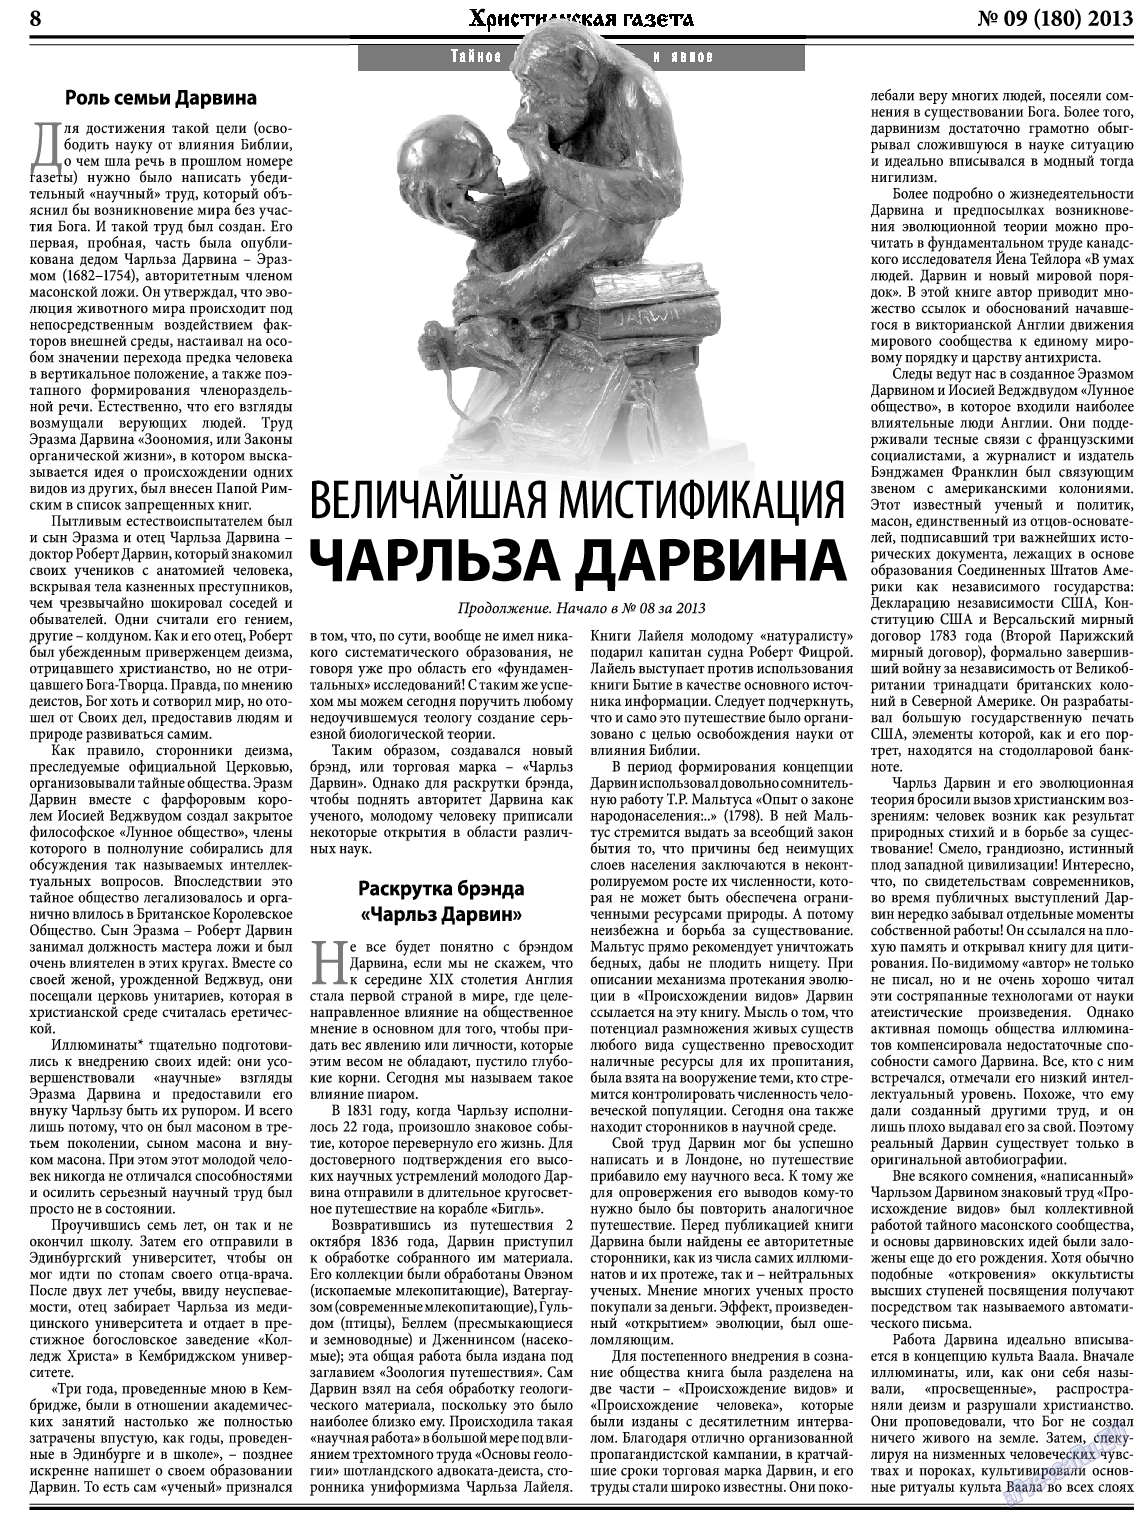 Христианская газета, газета. 2013 №9 стр.8